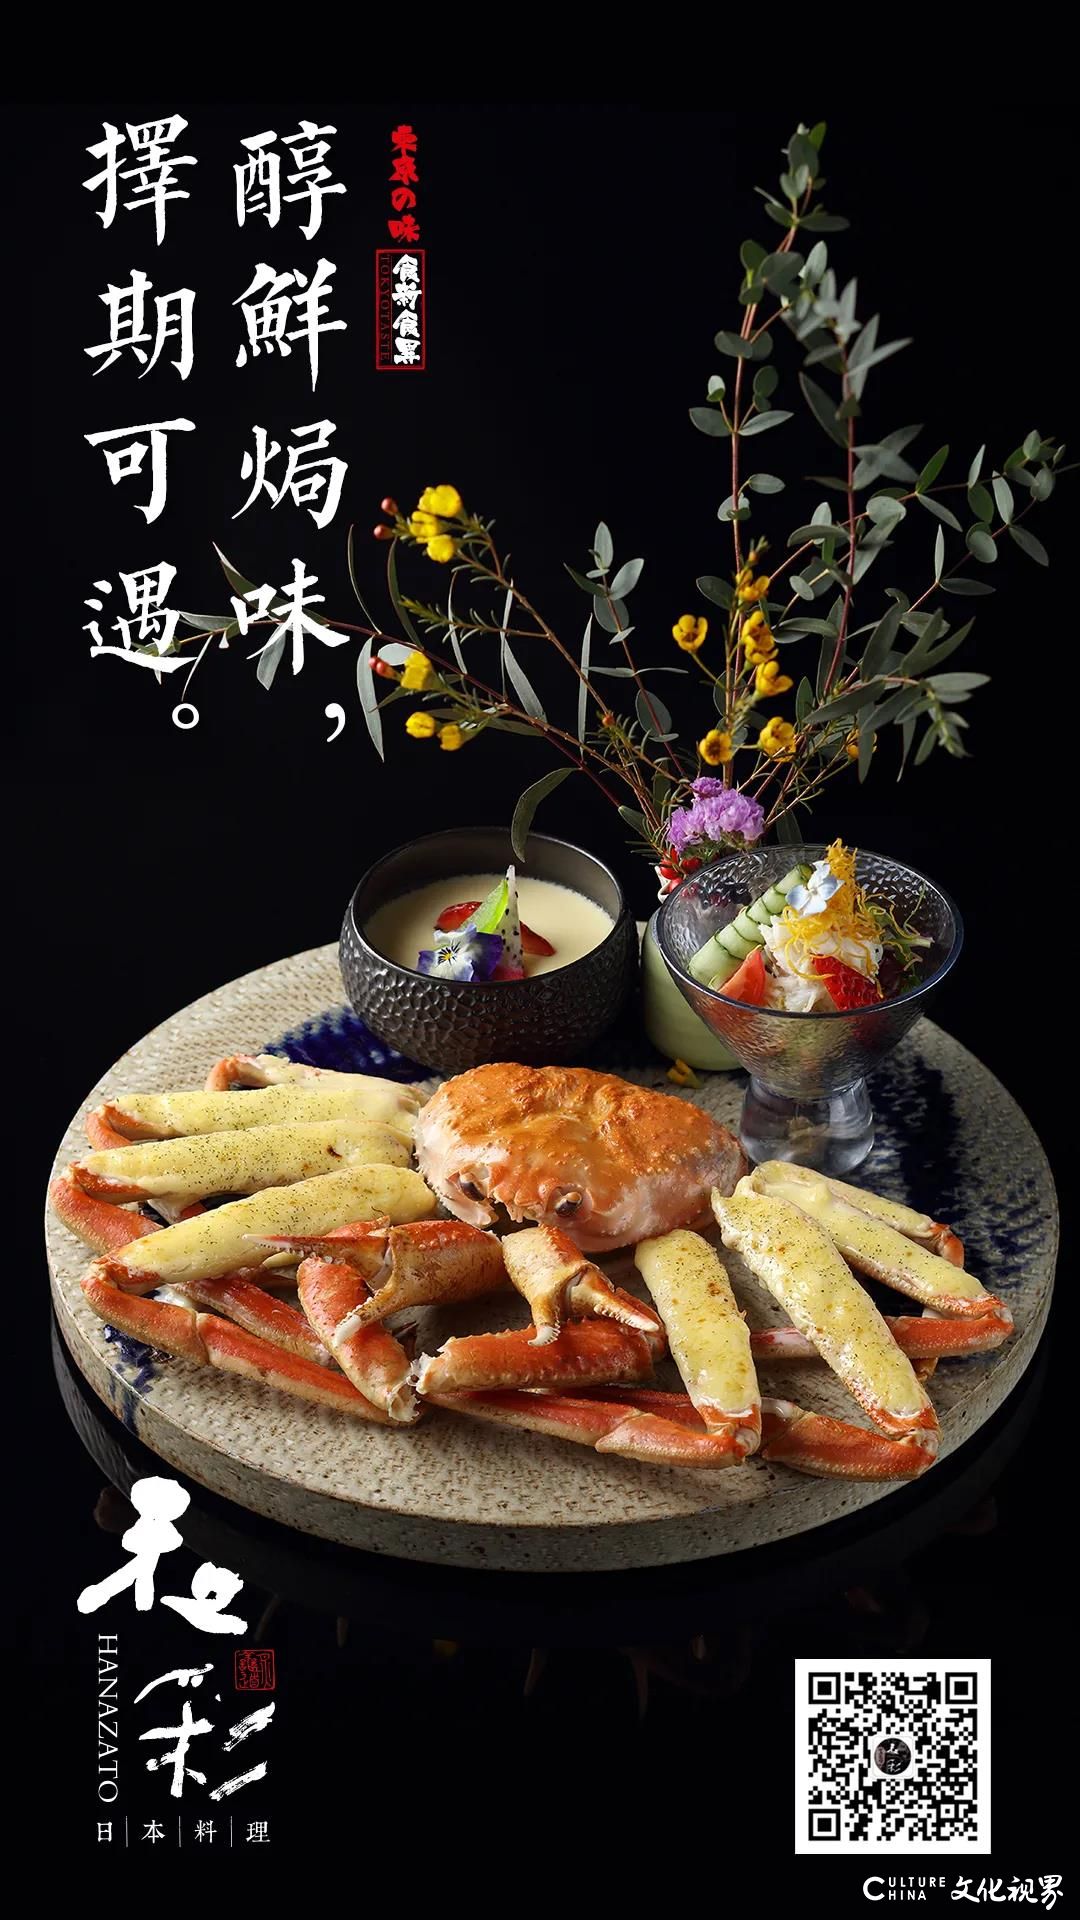 品新菜，知春味——济南和彩日本料理菜品上新，与春天的鲜香美味撞个满怀